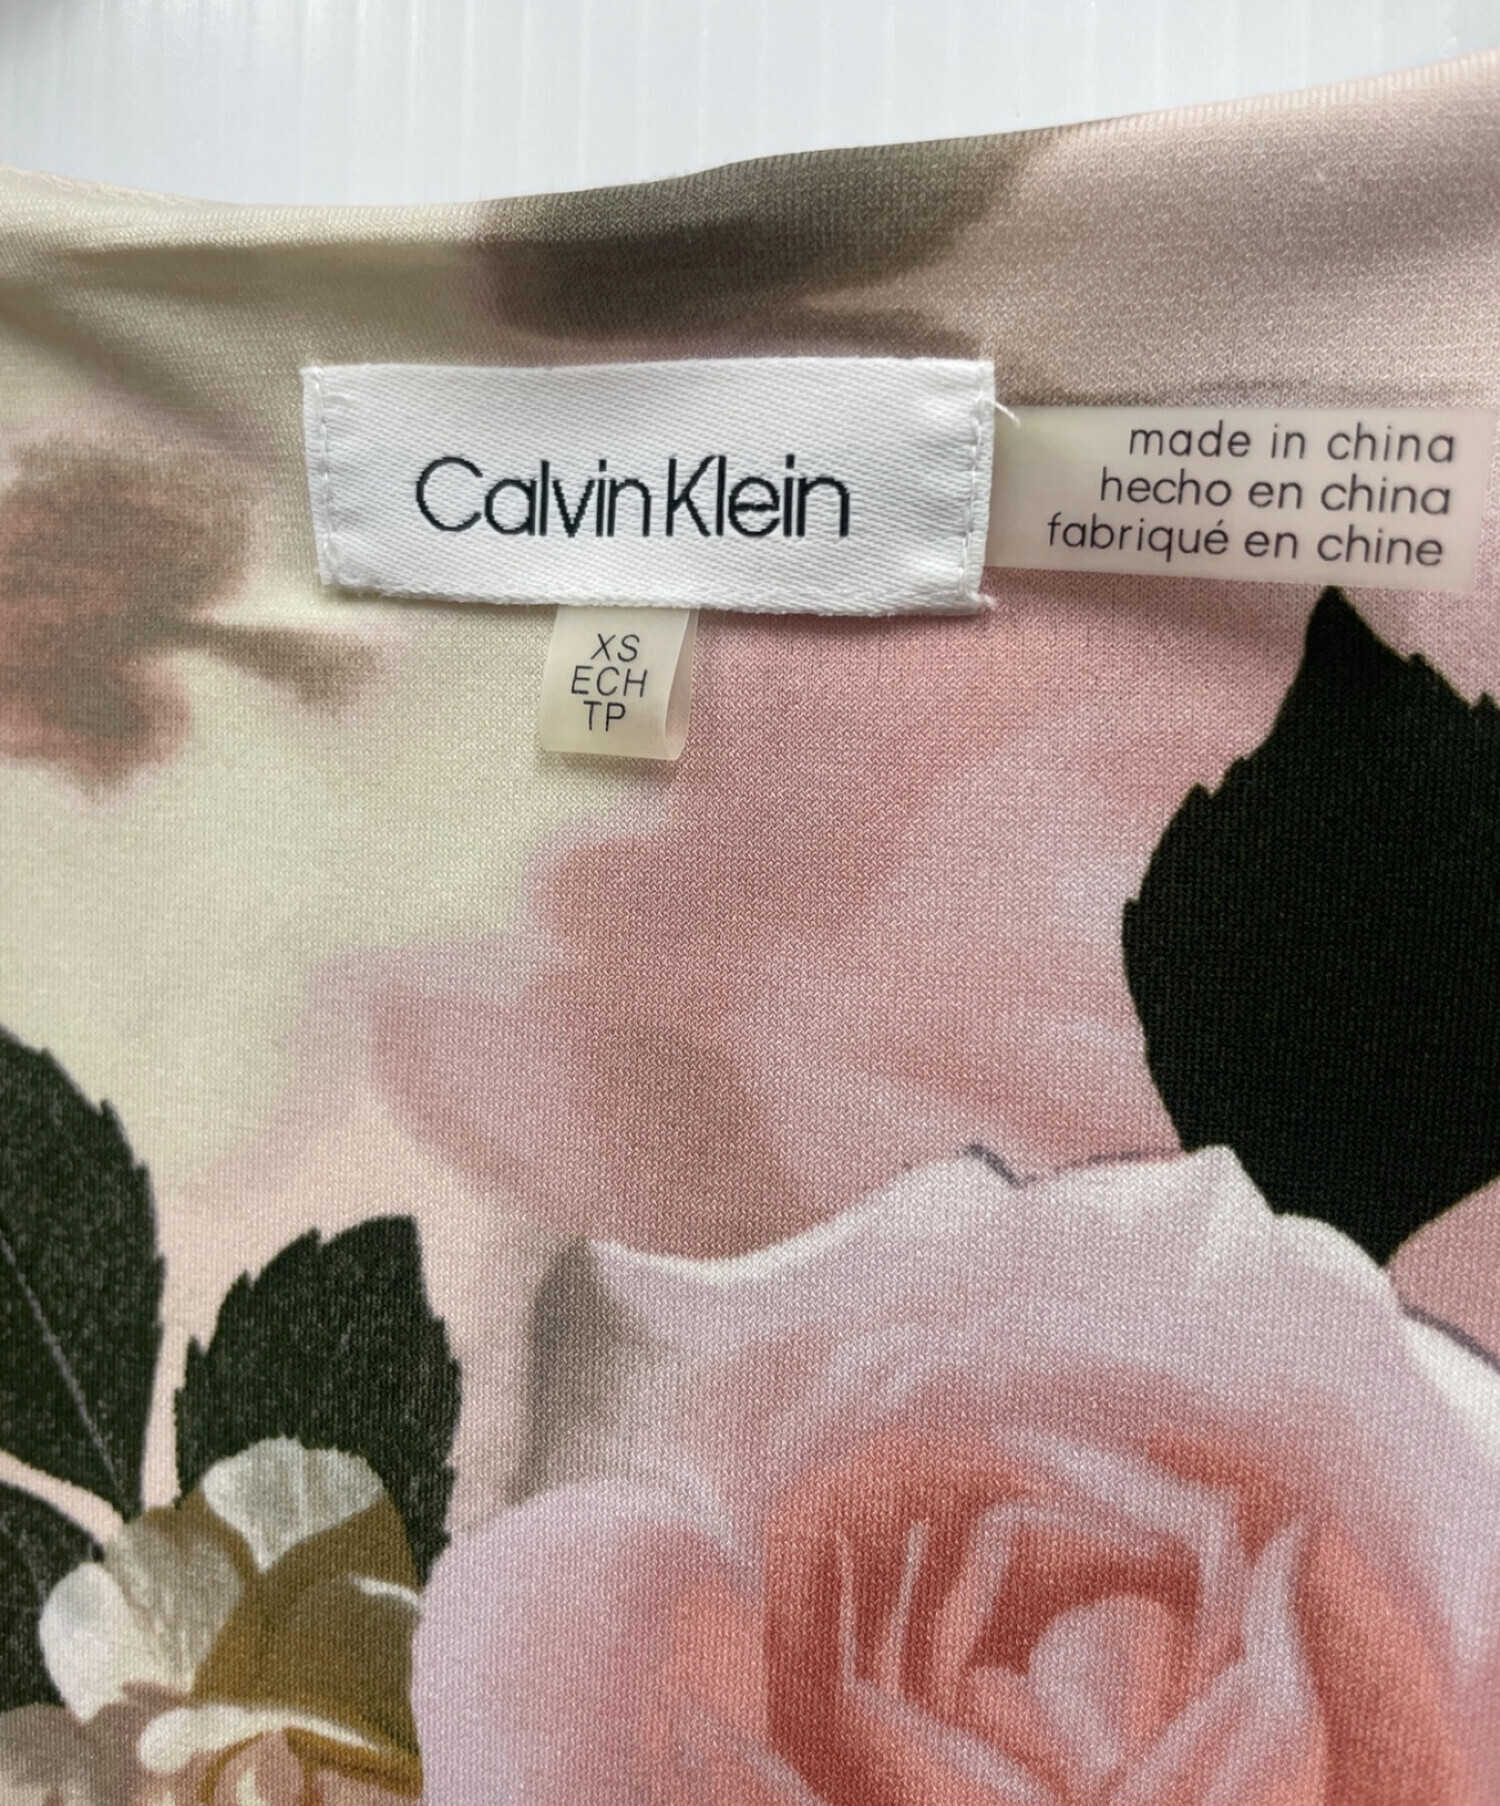 Calvin Klein (カルバンクライン) カシュクールフローラルワンピース ピンク サイズ:XS